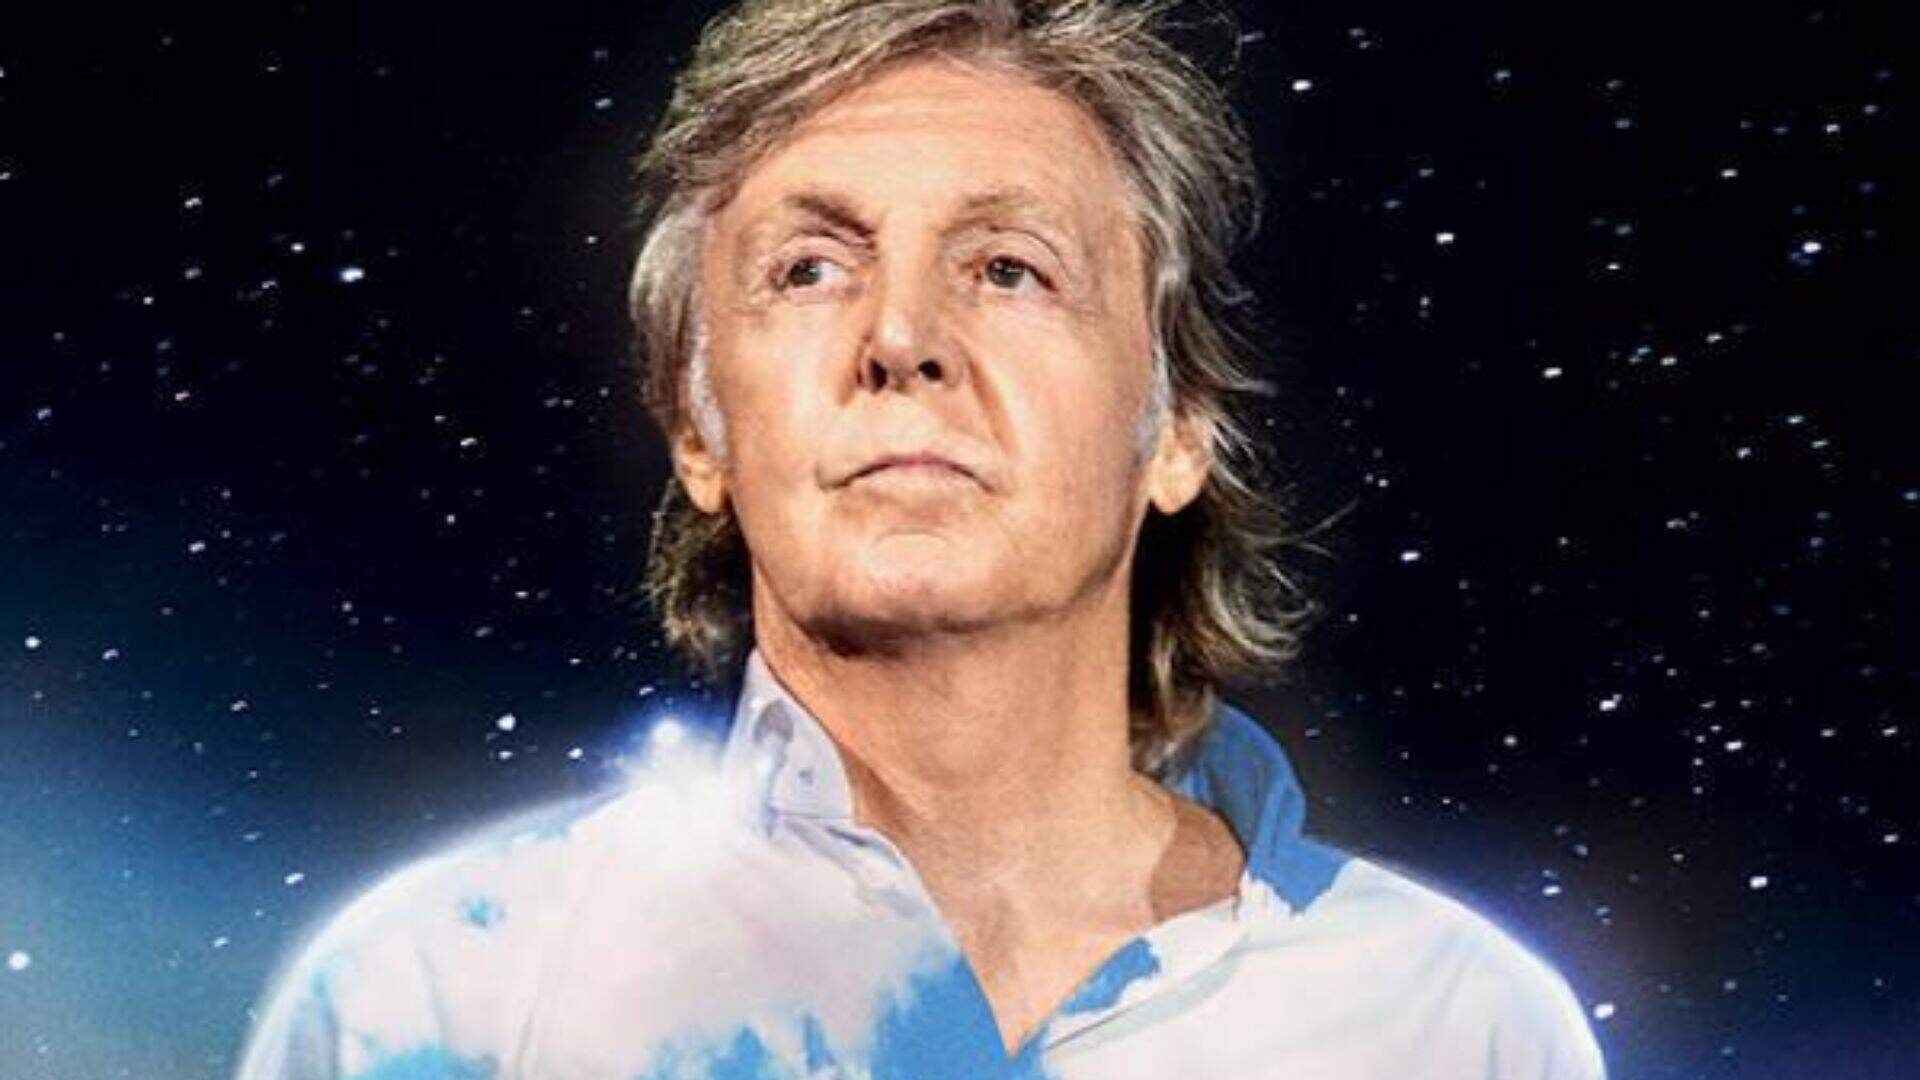 Mais um! Paul McCartney anuncia novo show extra em SP após alta demanda de ingressos - Metropolitana FM